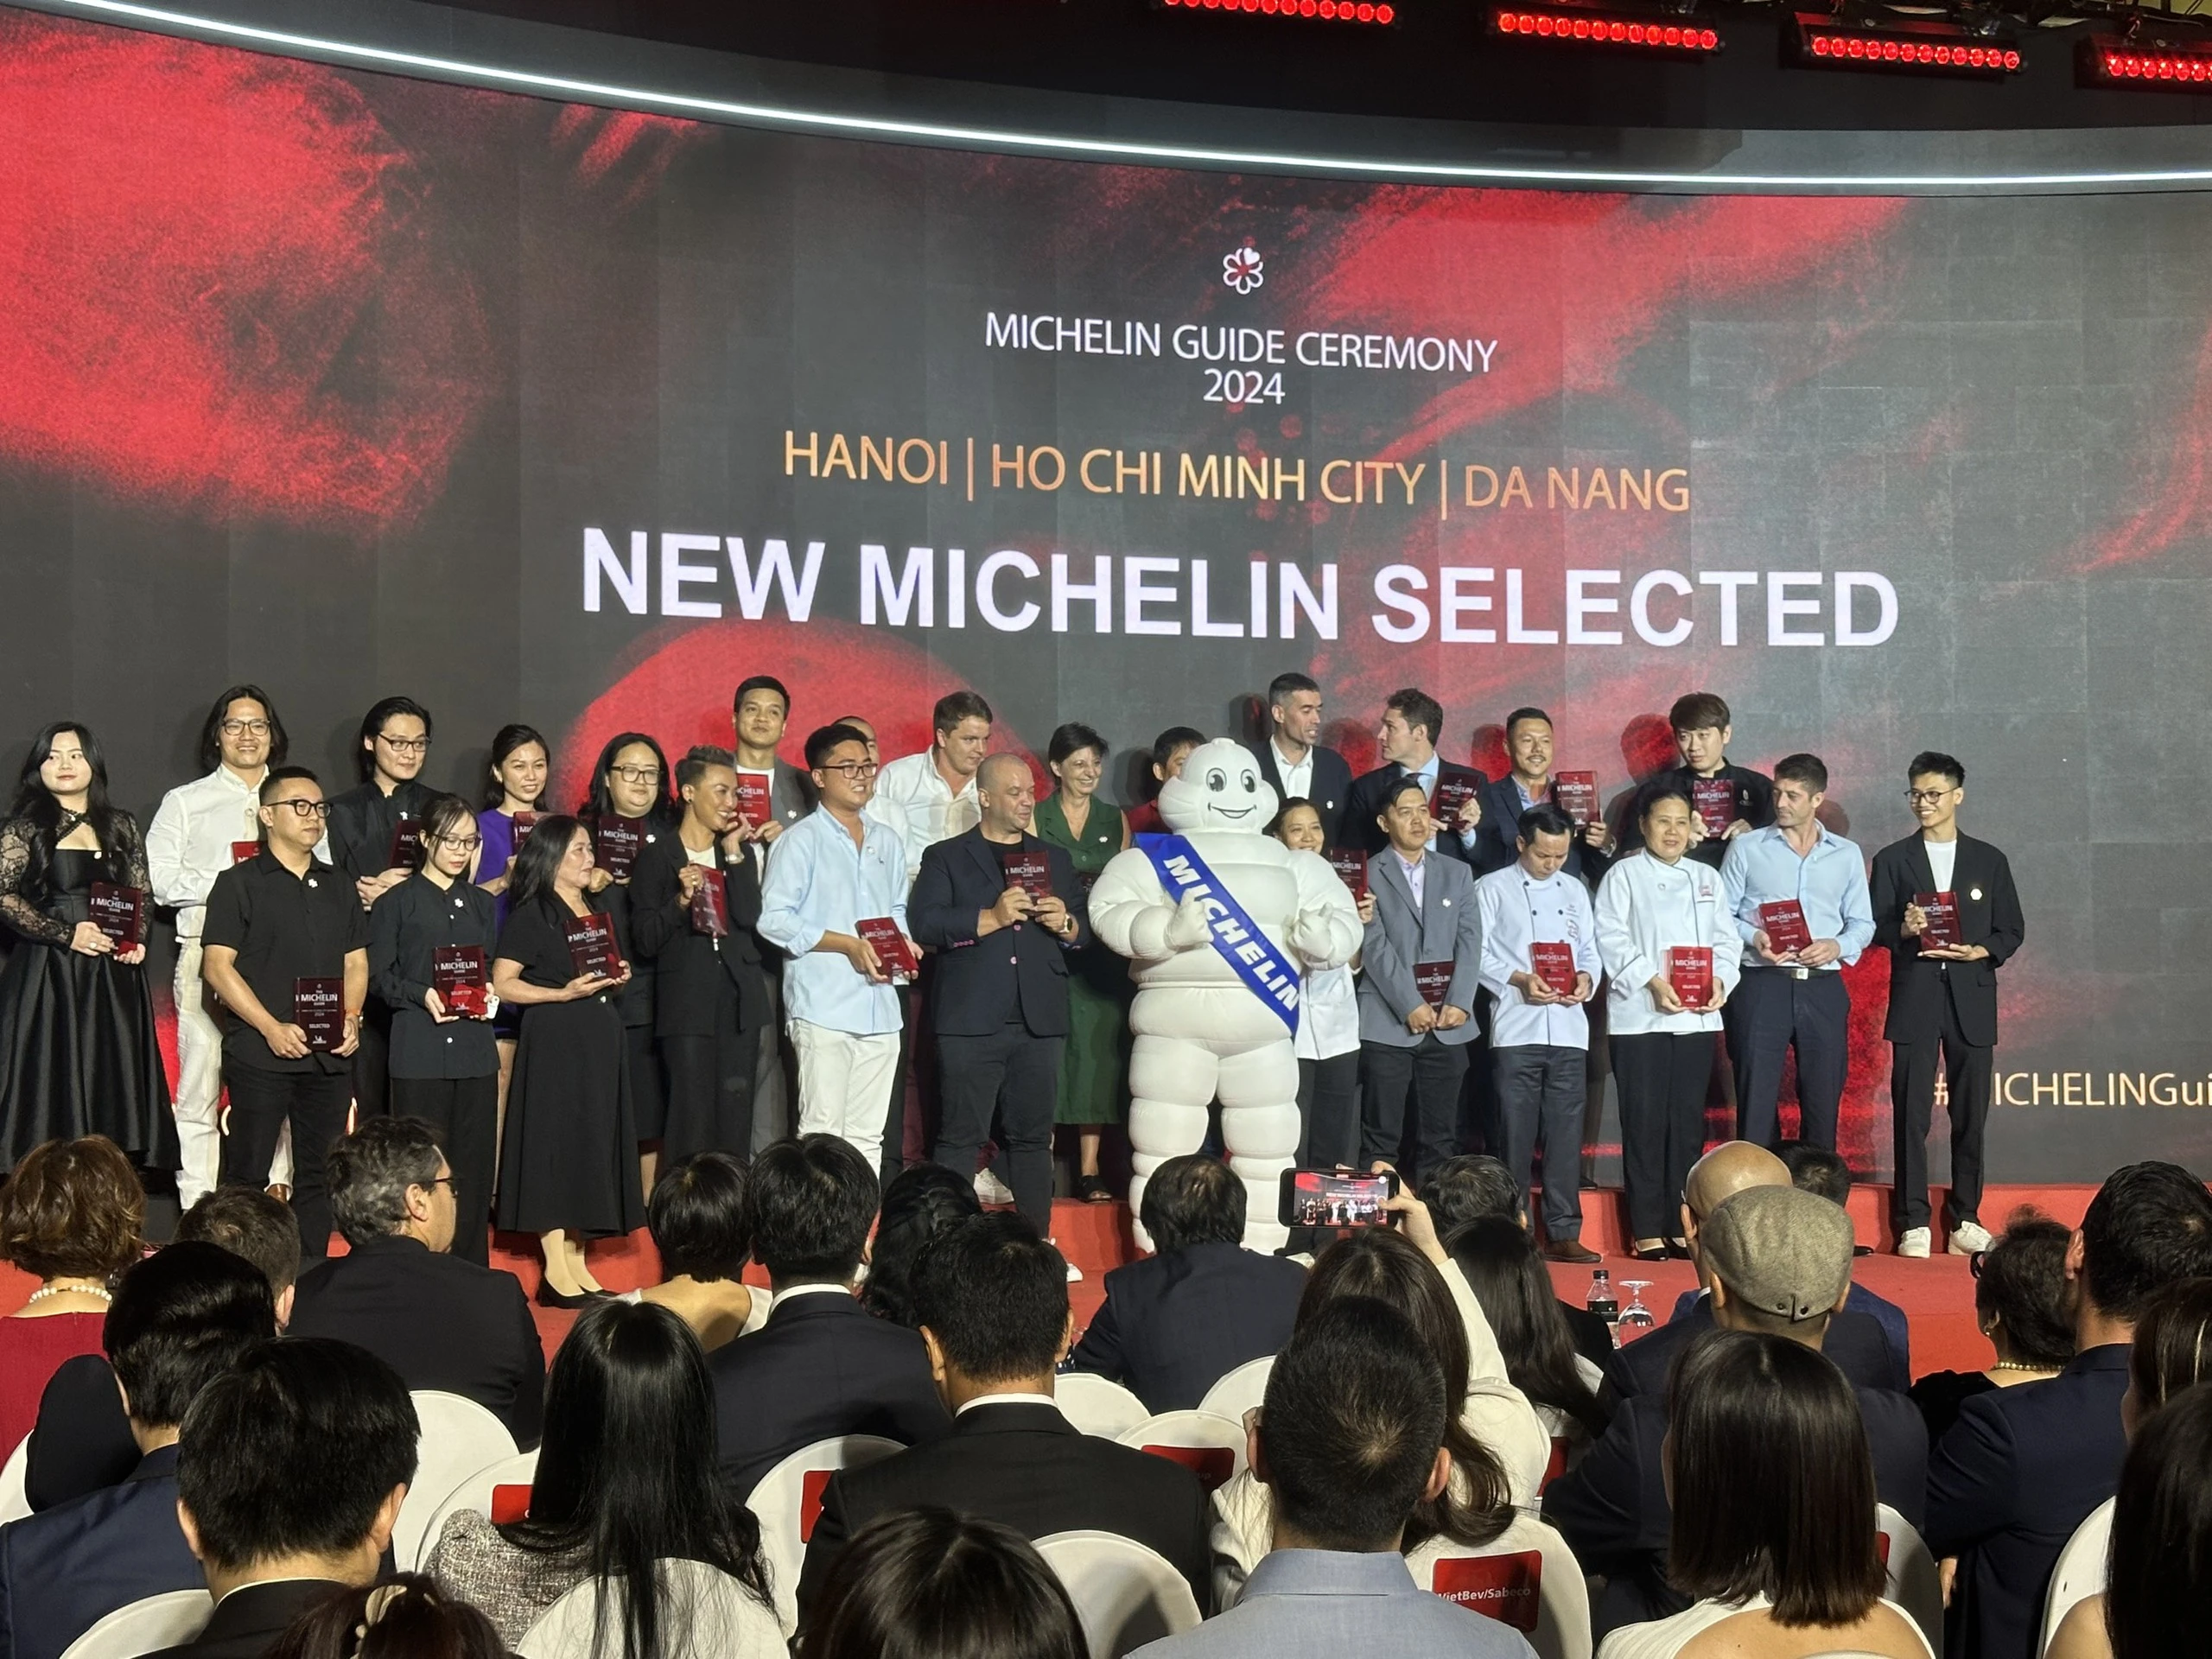 7 nhà hàng được gắn sao Michelin tại Việt Nam: Lần đầu tiên có sao xanh